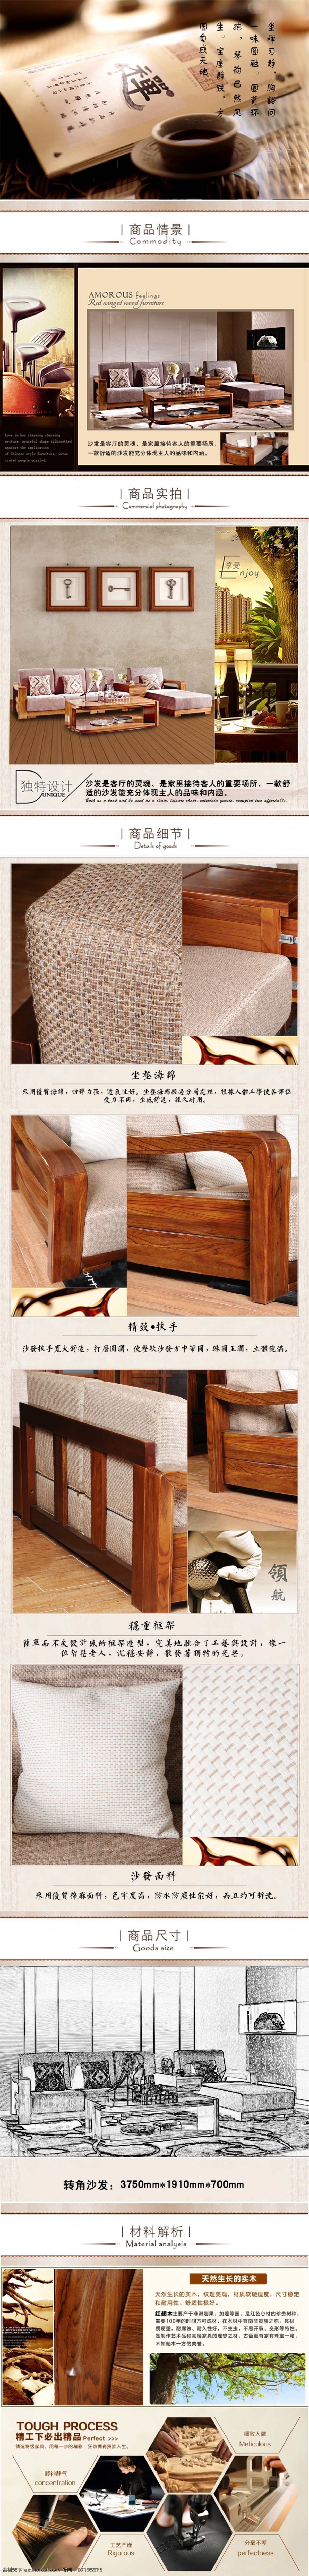 中式现代沙发 中式沙发 组合沙发 新中式风格 淘宝详情 白色